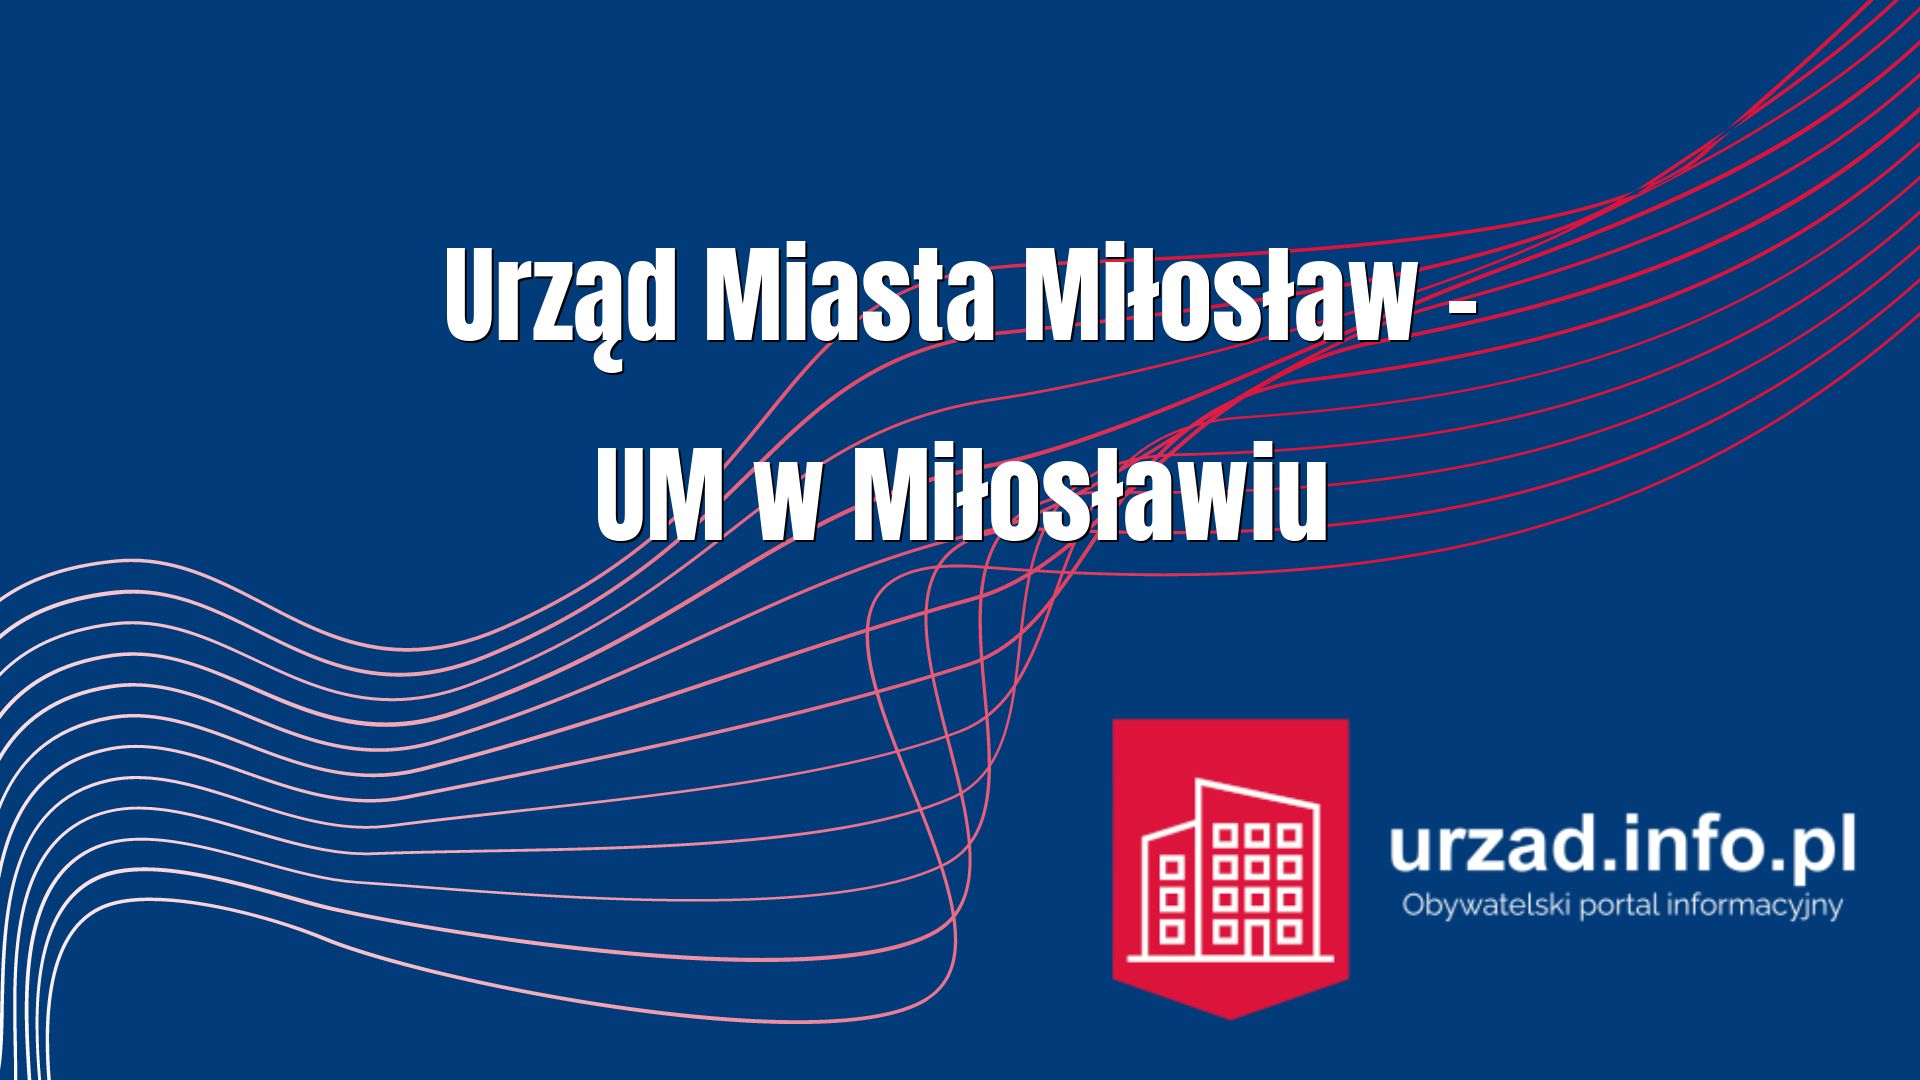 Urząd Miasta Miłosław – UM w Miłosławiu